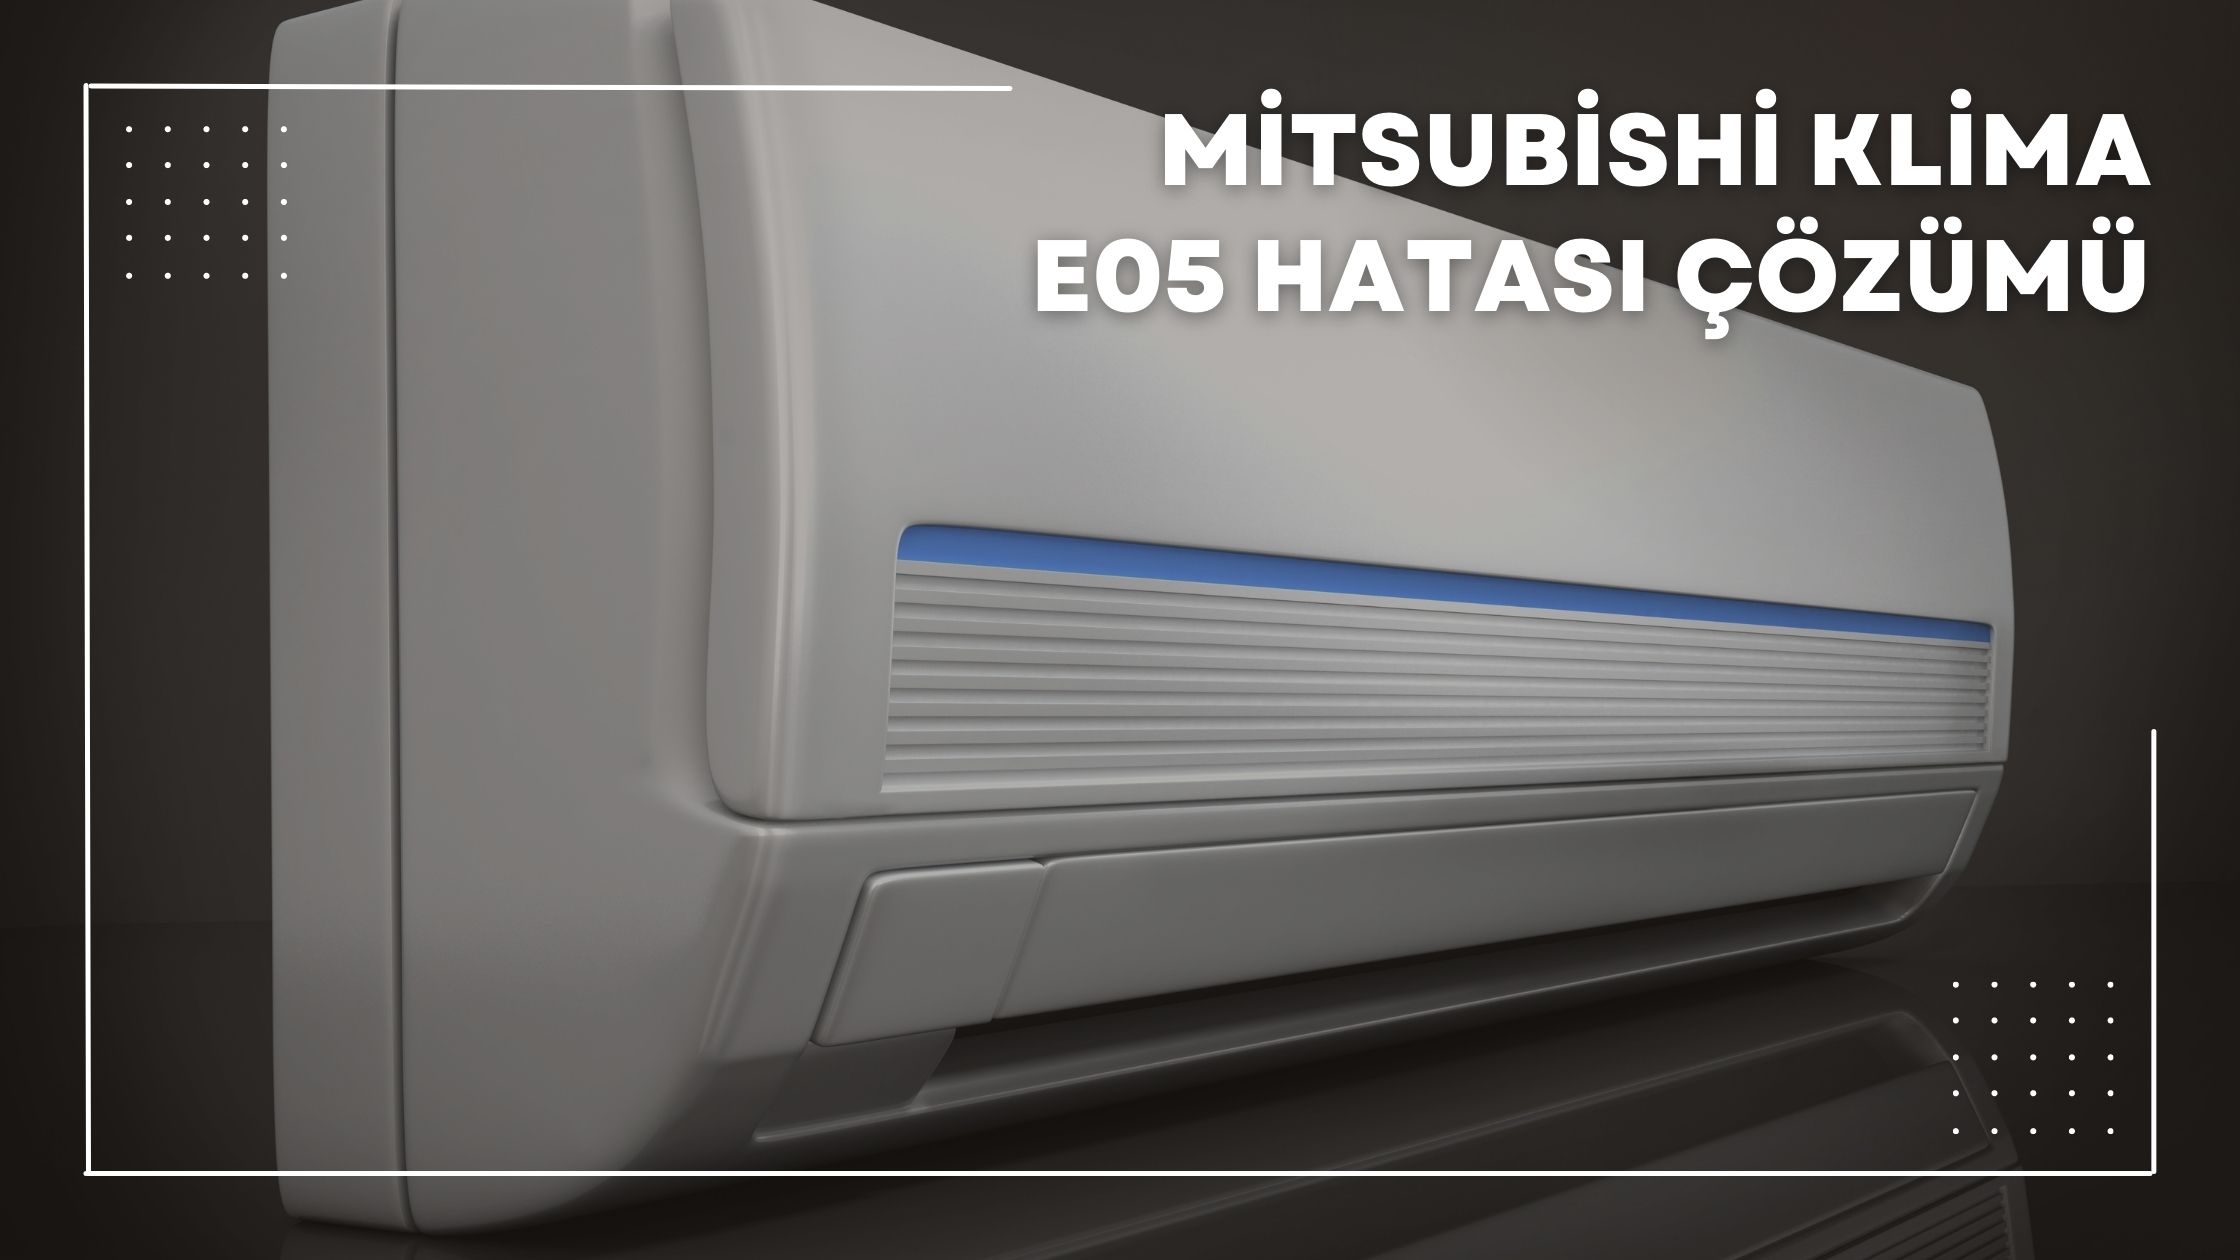 Mitsubishi Klima E05 Hatası Çözümü